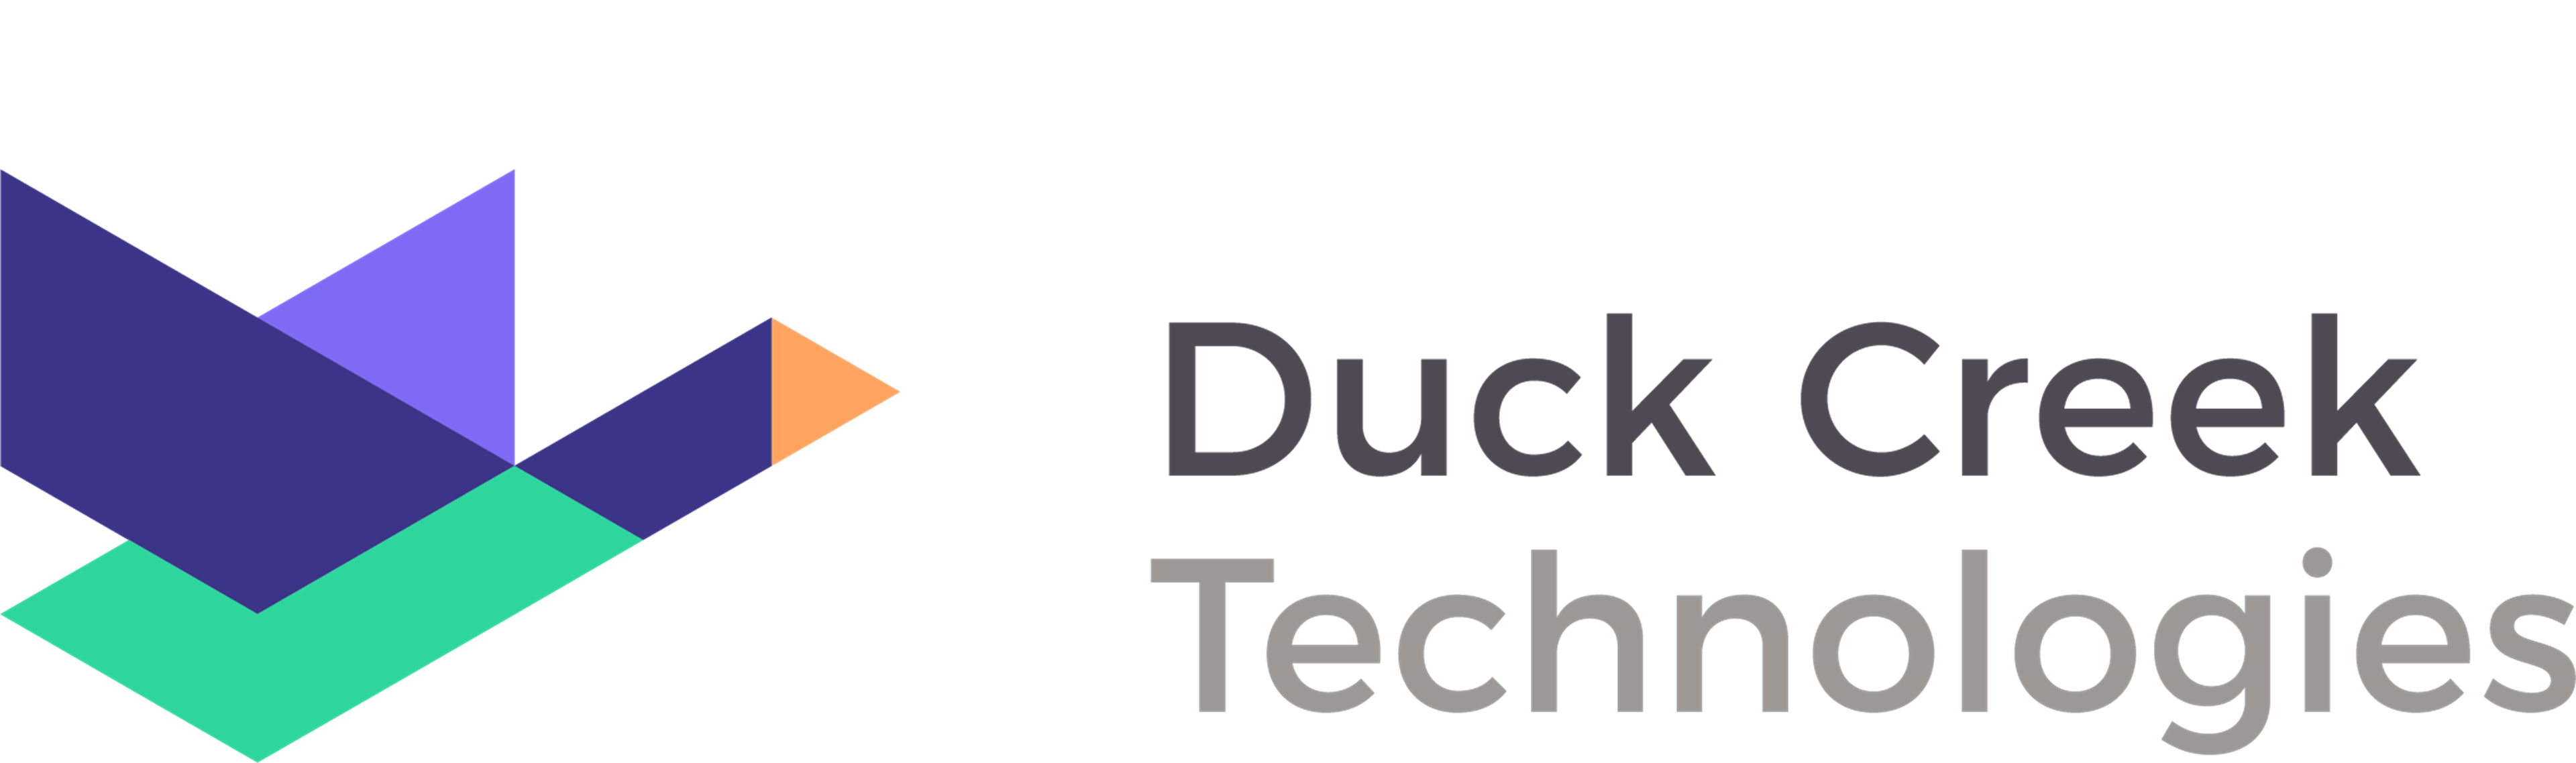 Duck Creek logo